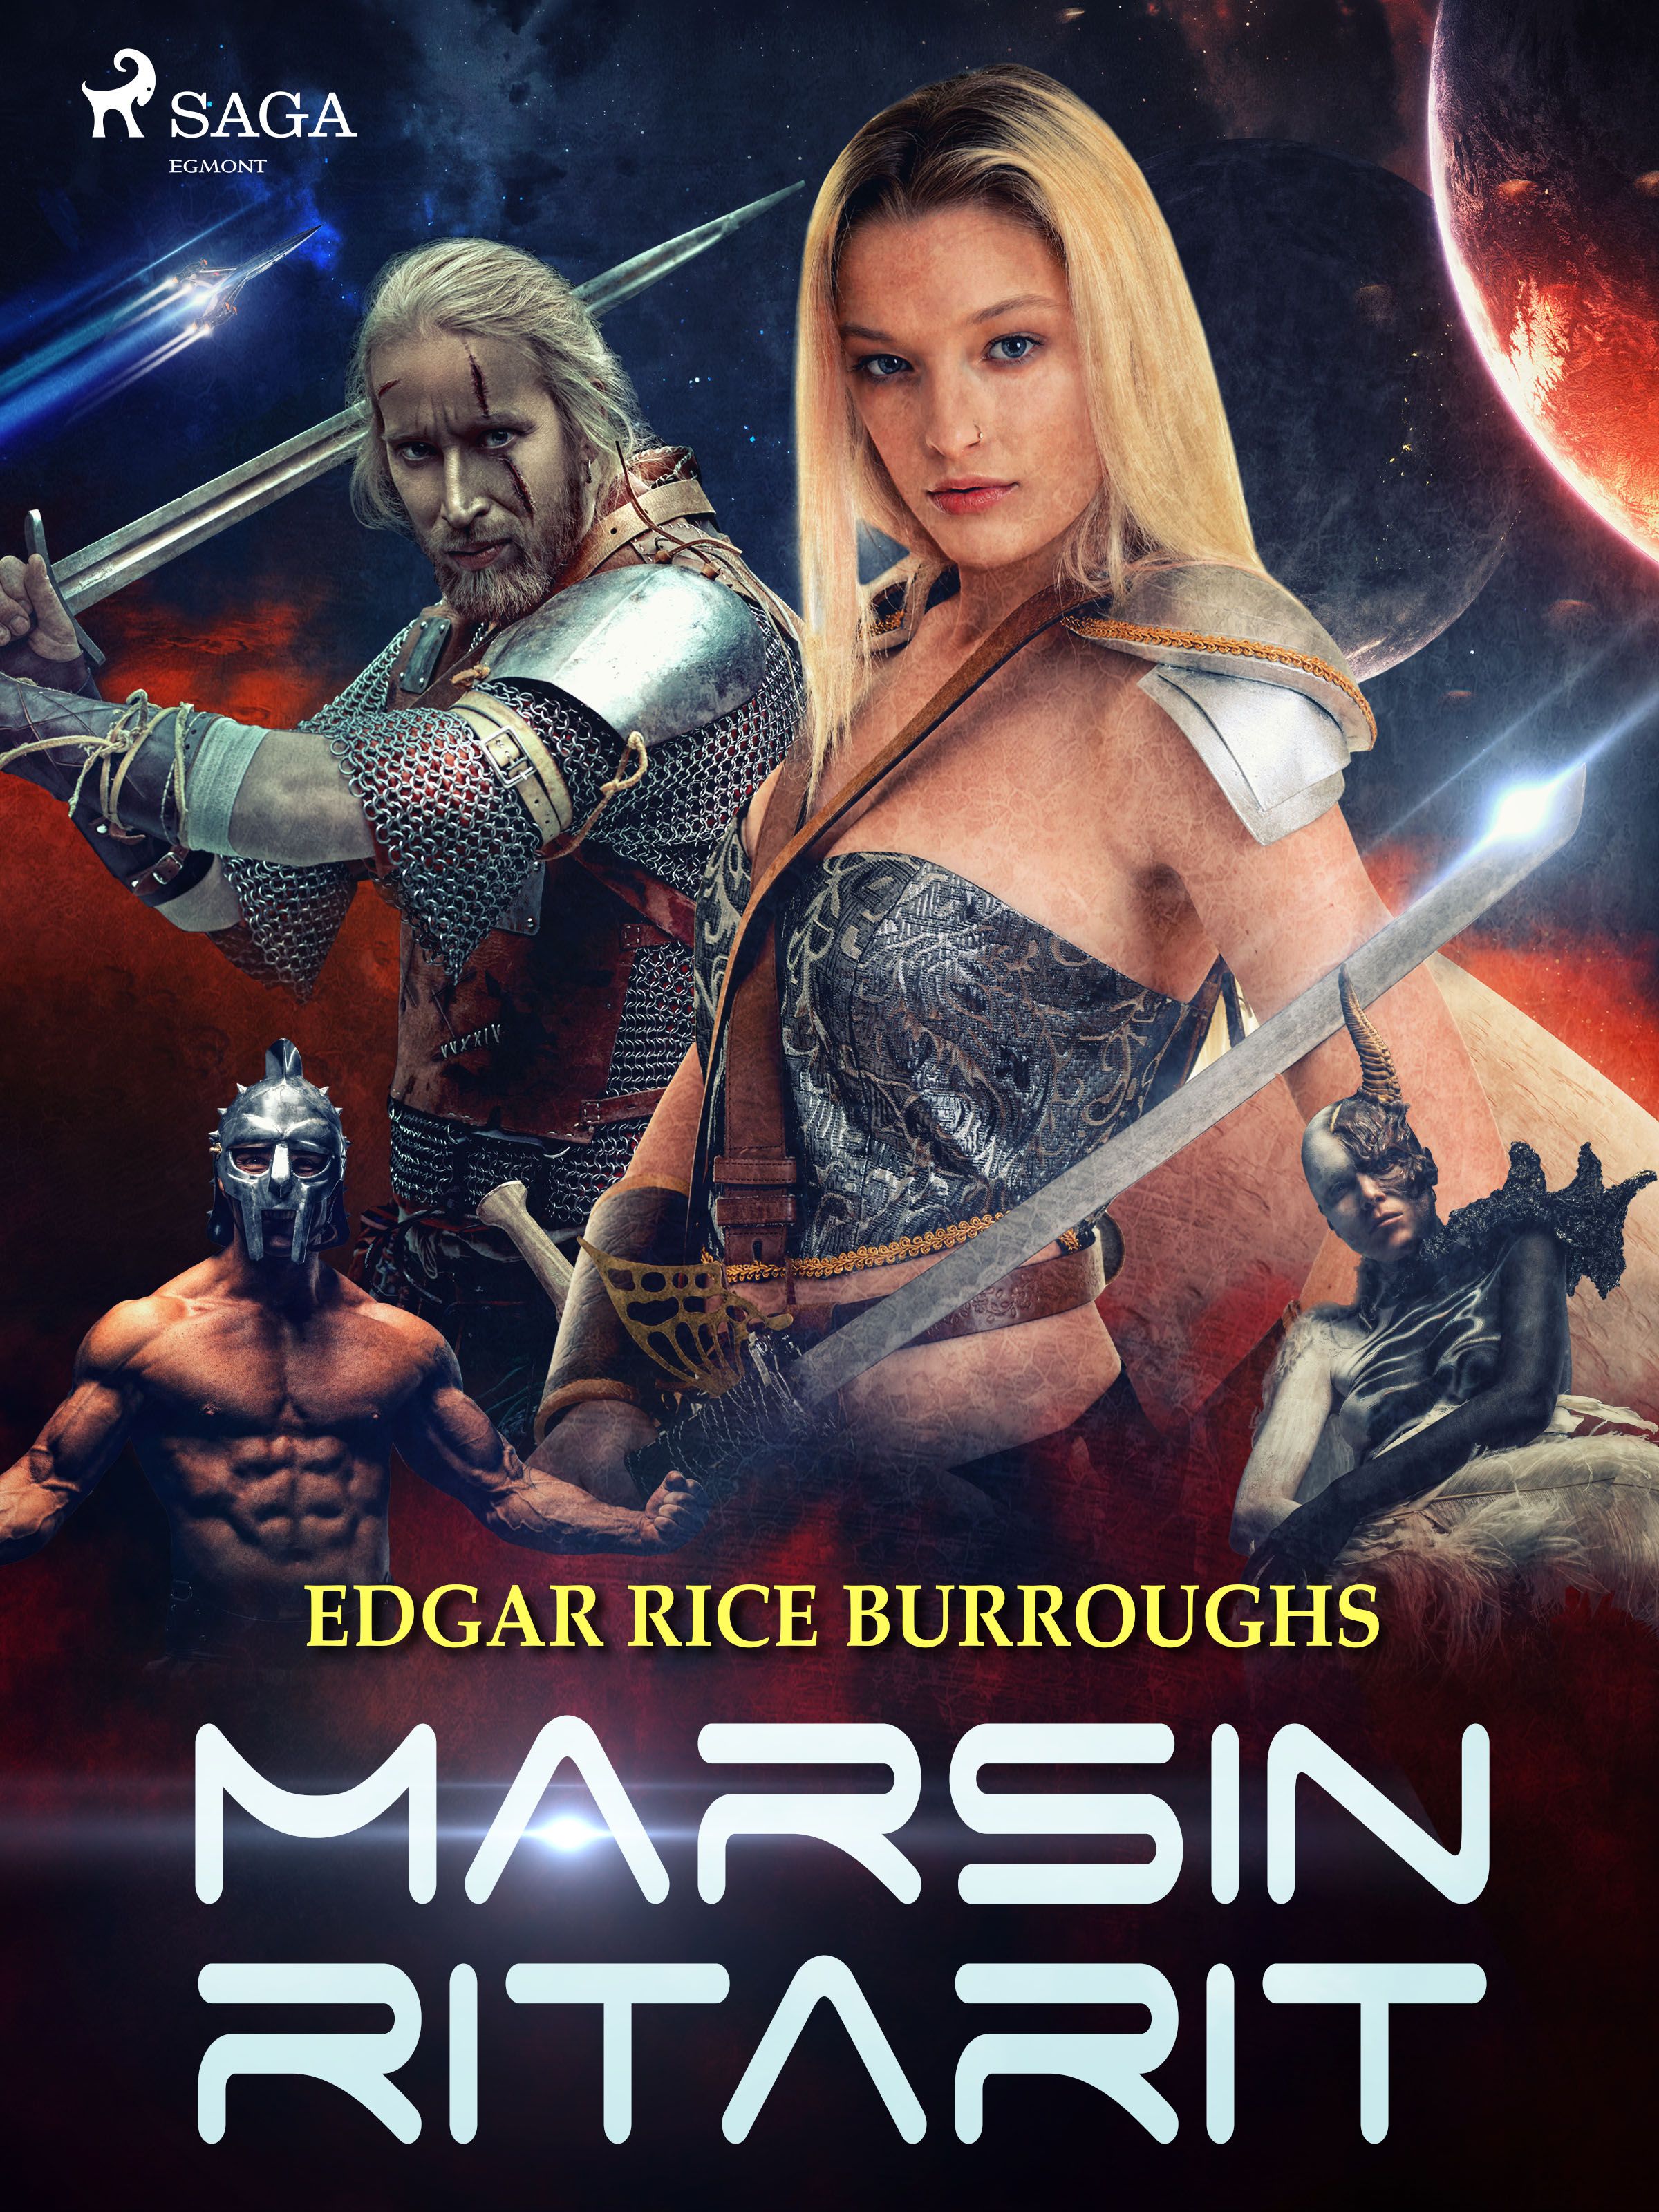 Marsin ritarit, e-bok av Edgar Rice Burroughs